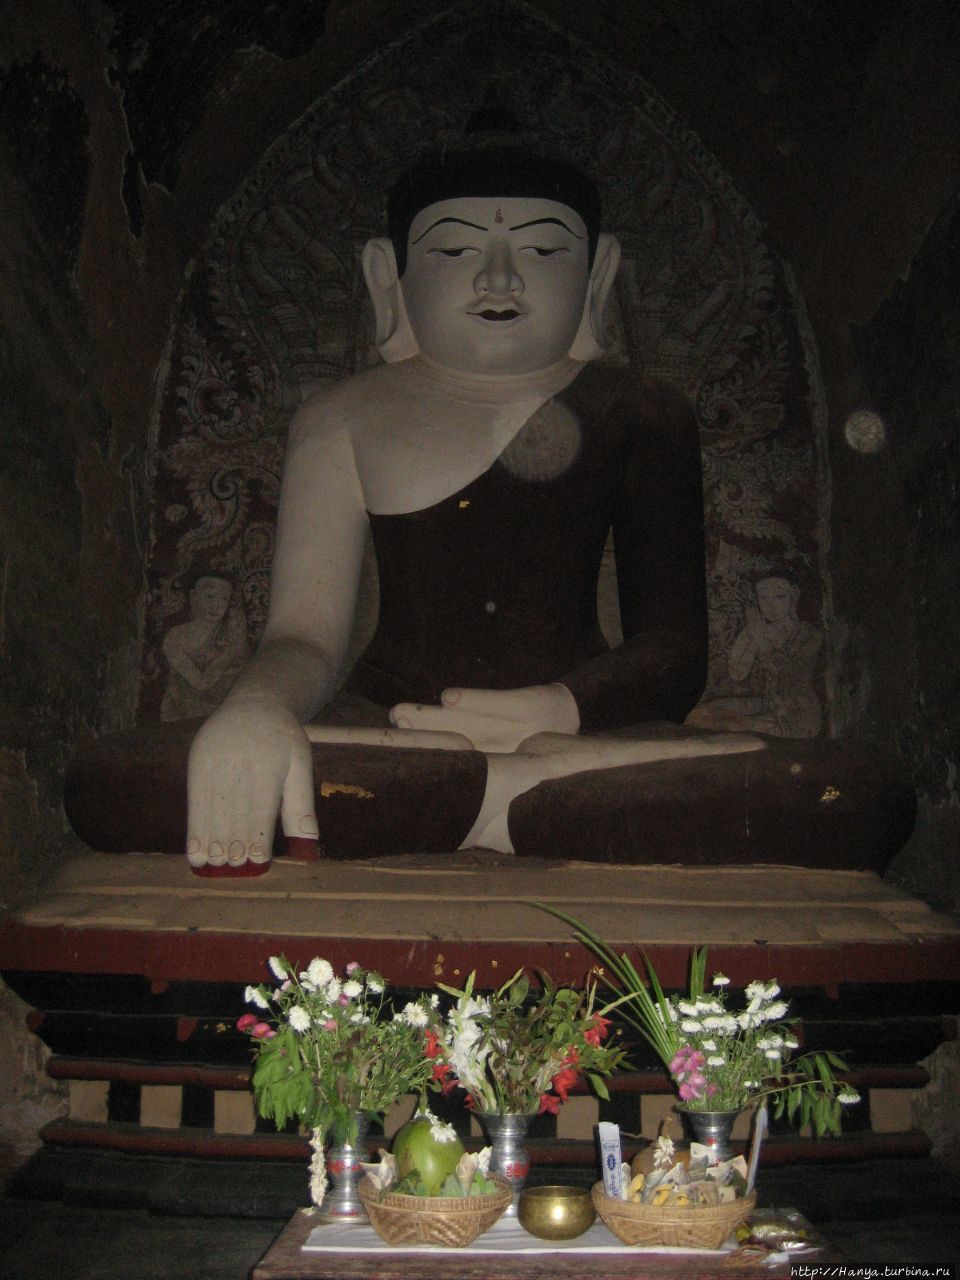 Храм Гавдавпалин Баган, Мьянма